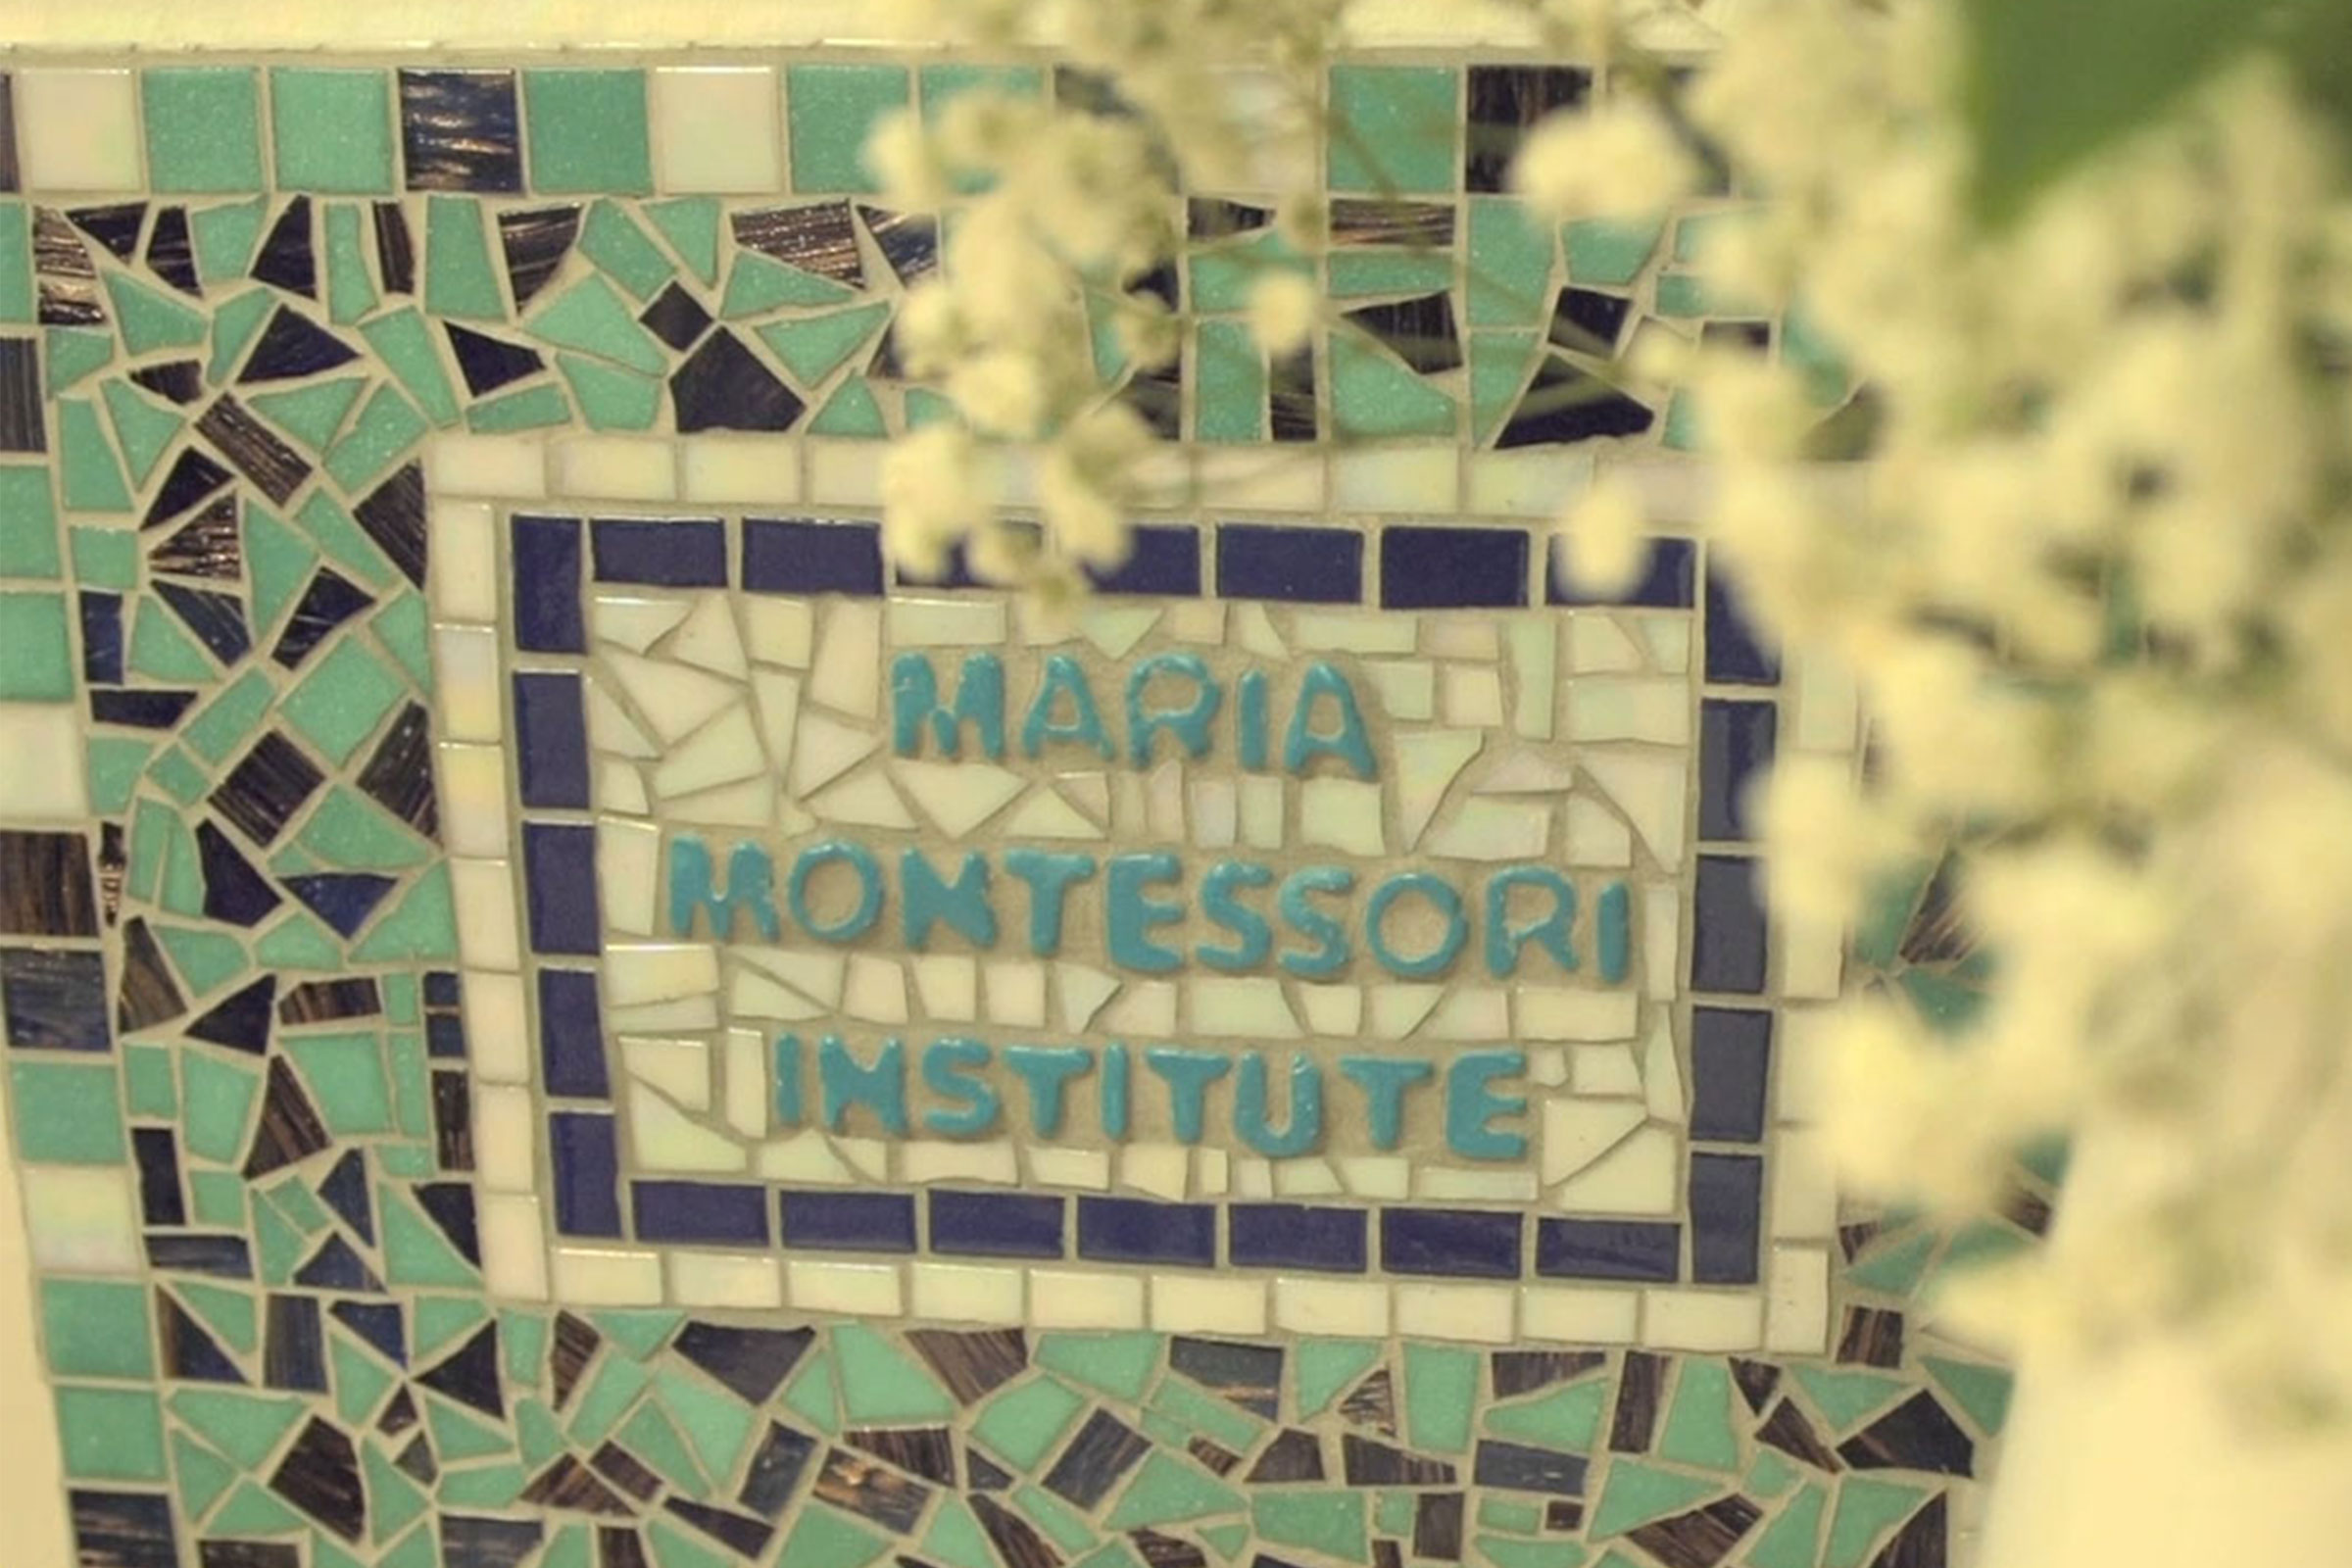 Maria Montessori Institute plaque